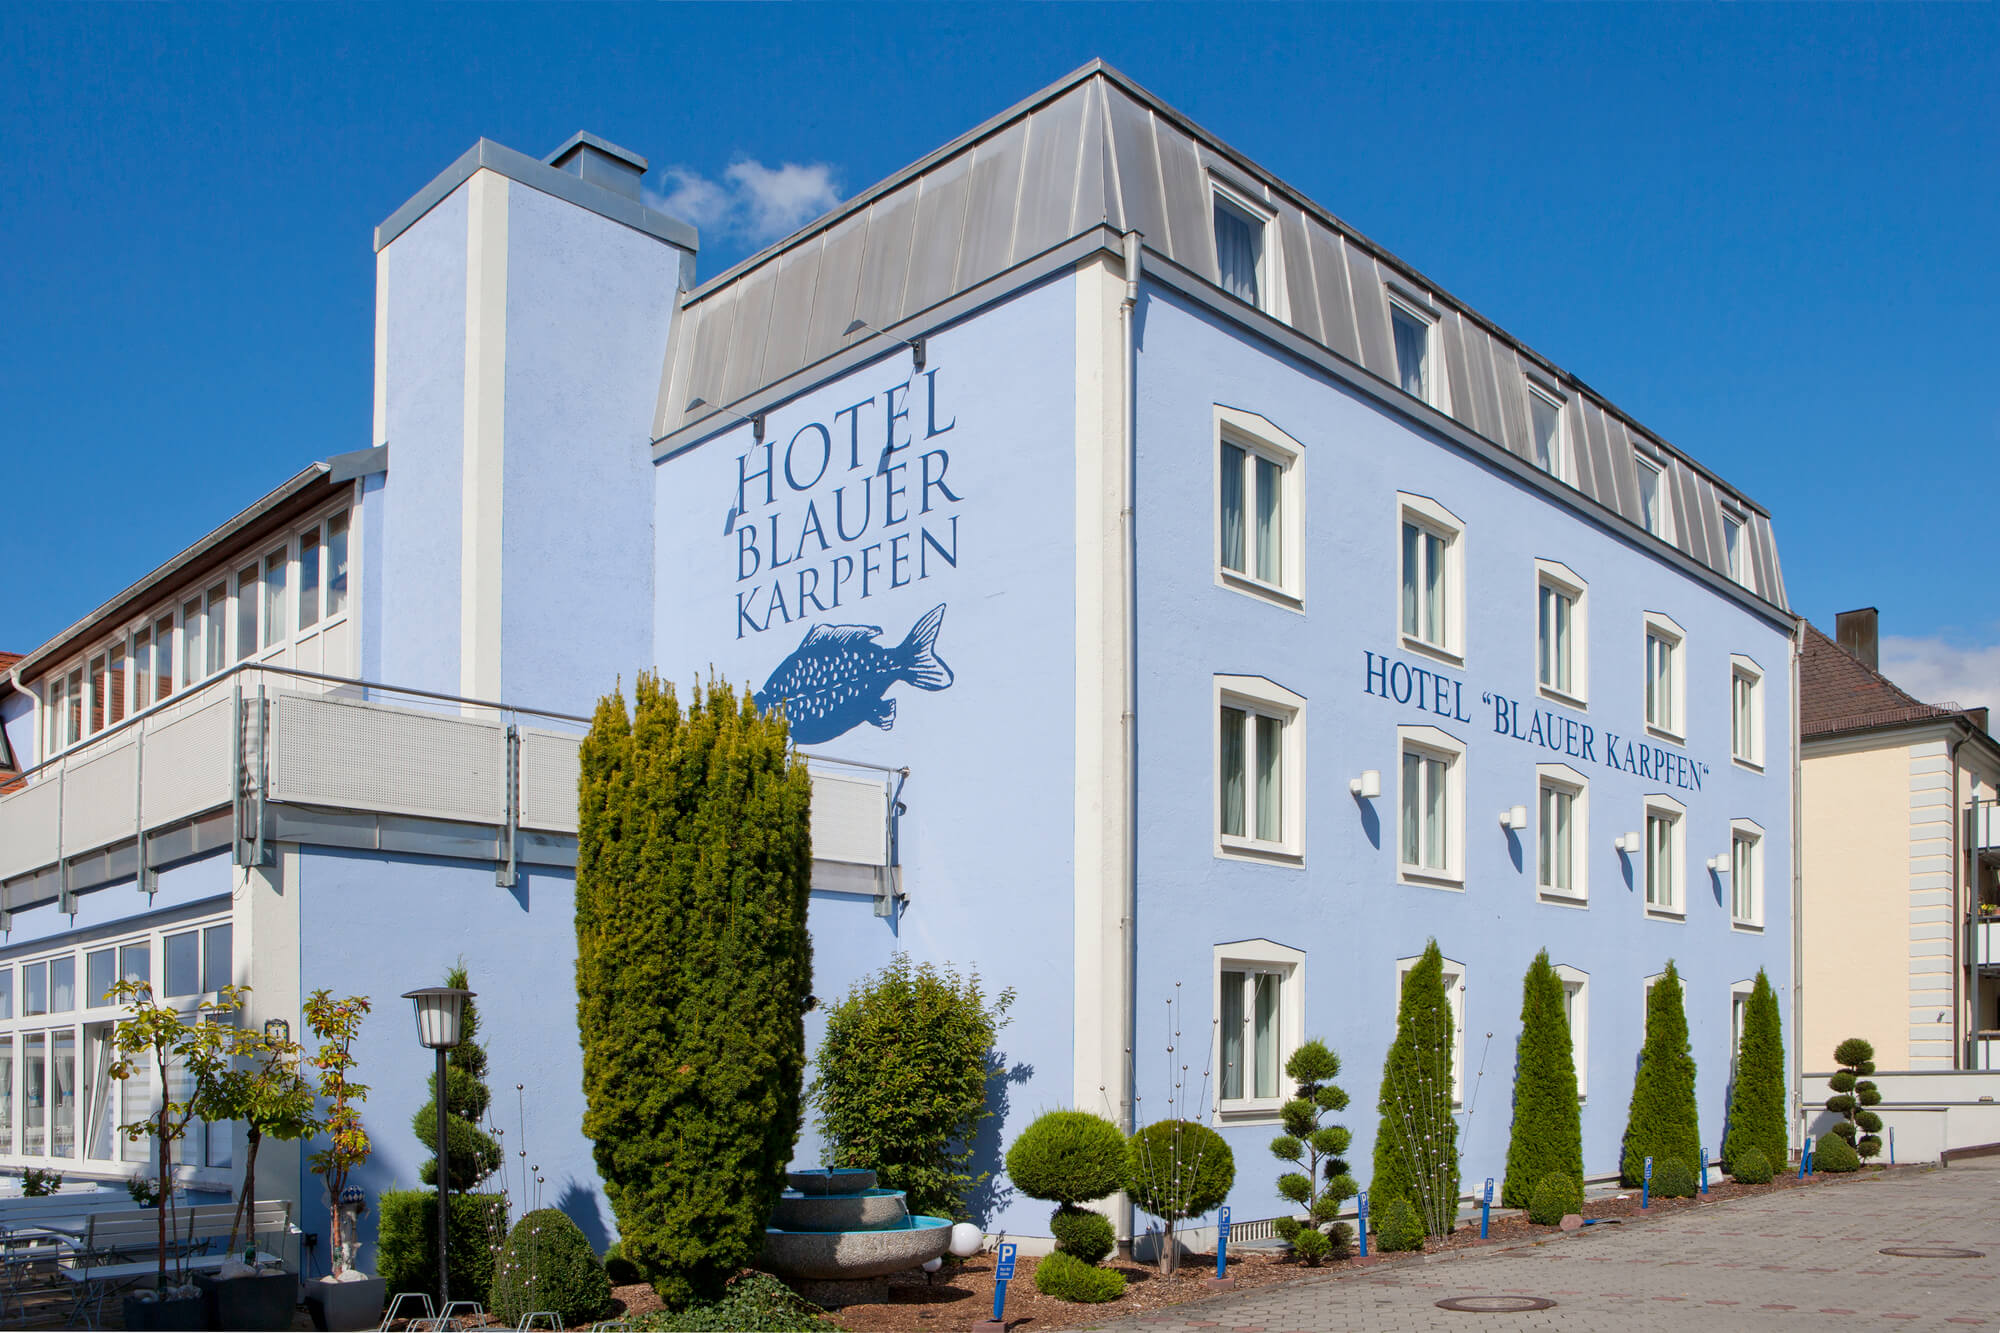 Address of The Hotel Blauer Karpfen